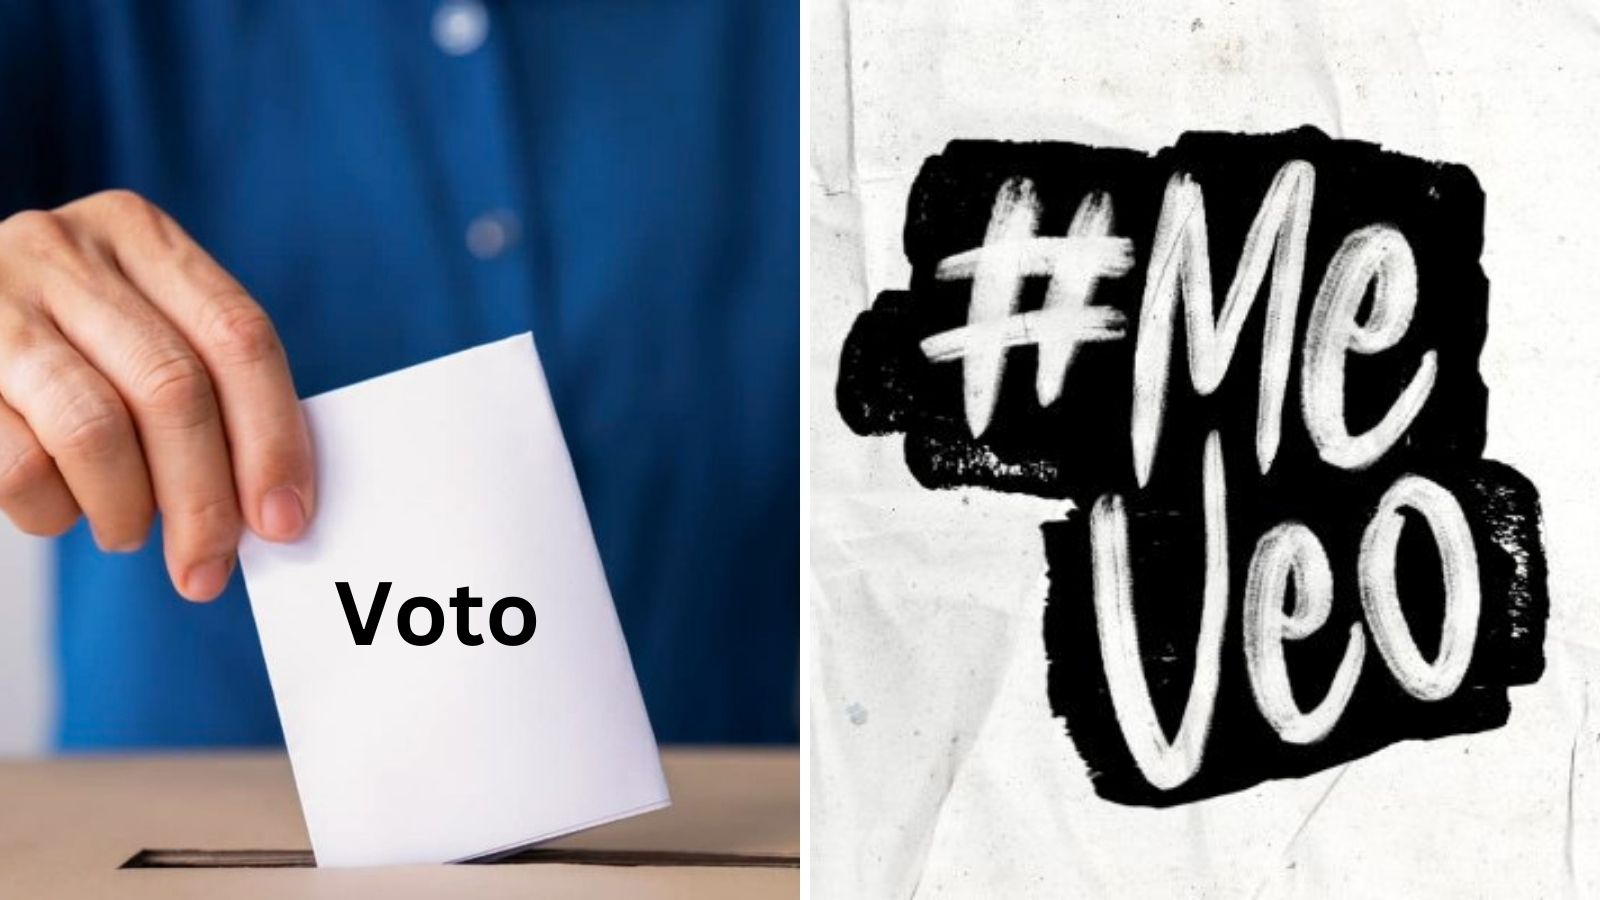 Campaña #MeVeo busca promover la credencialización del INE